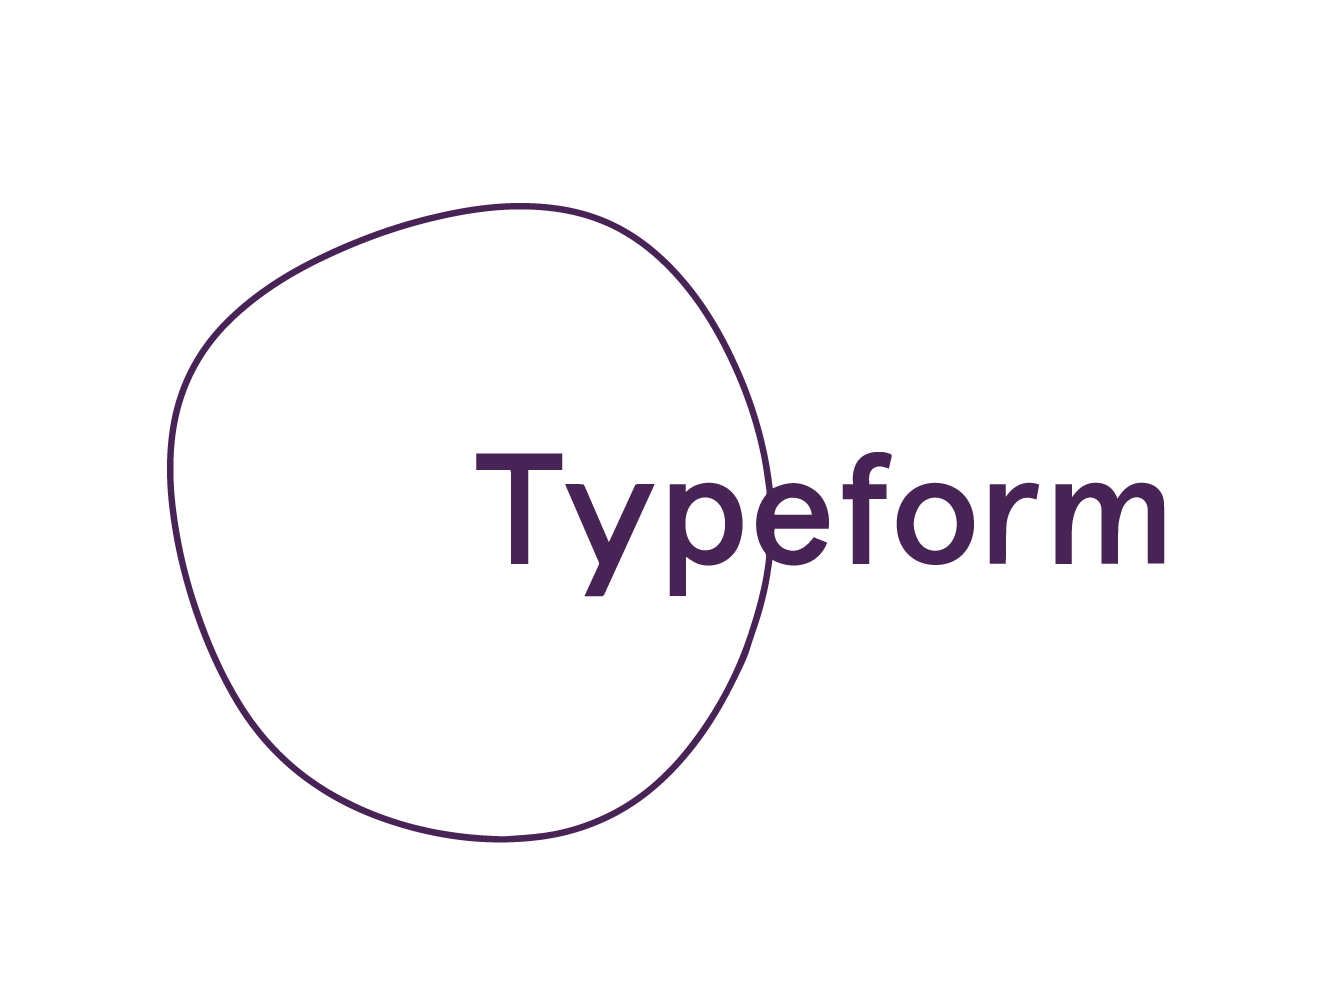 logos_workshops-typeform.png